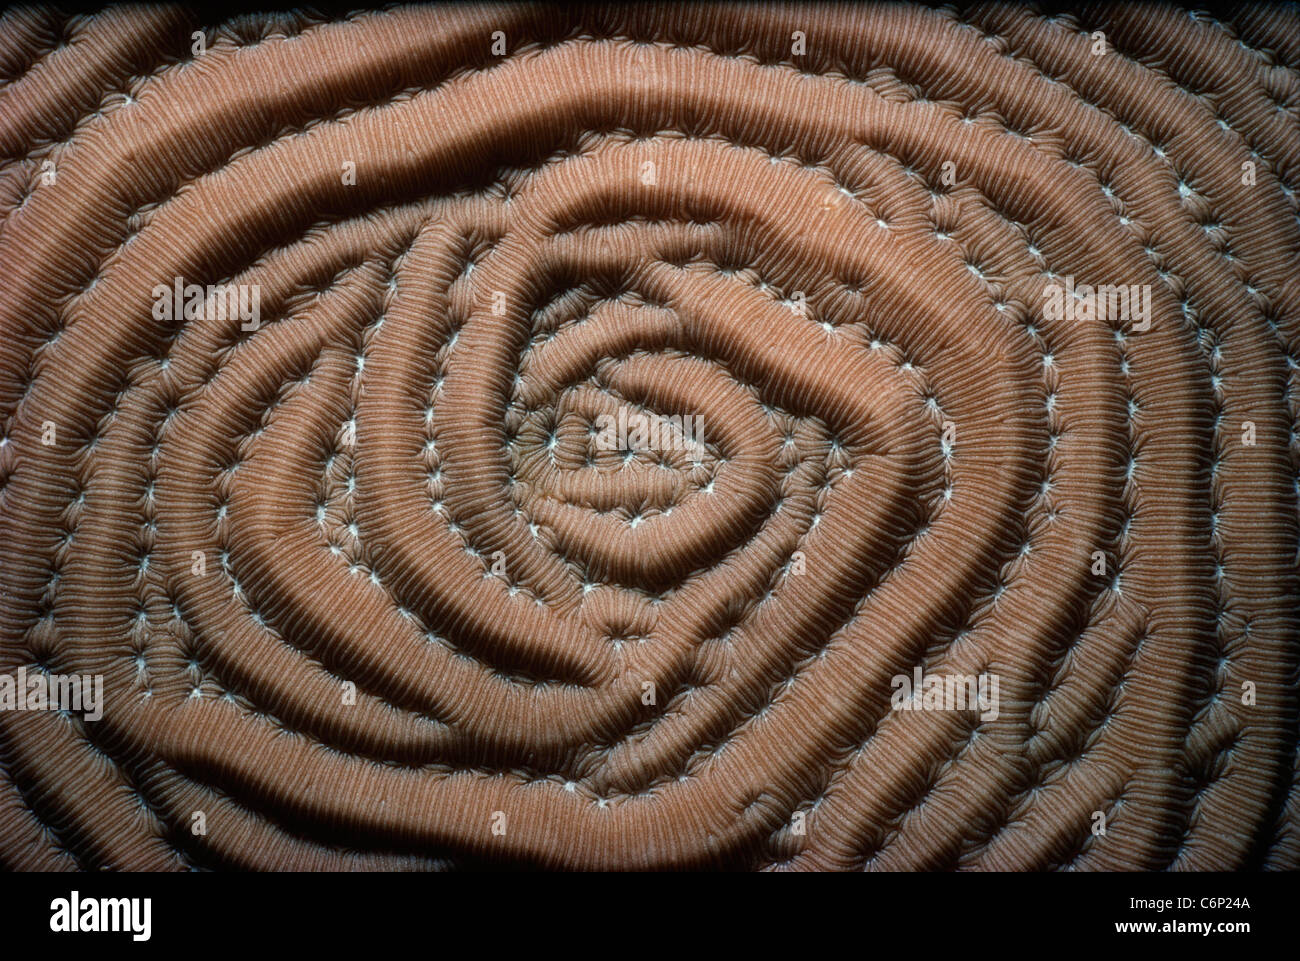 Corallo a spirale. Florida Keys, Florida, Stati Uniti d'America, Oceano Atlantico Foto Stock